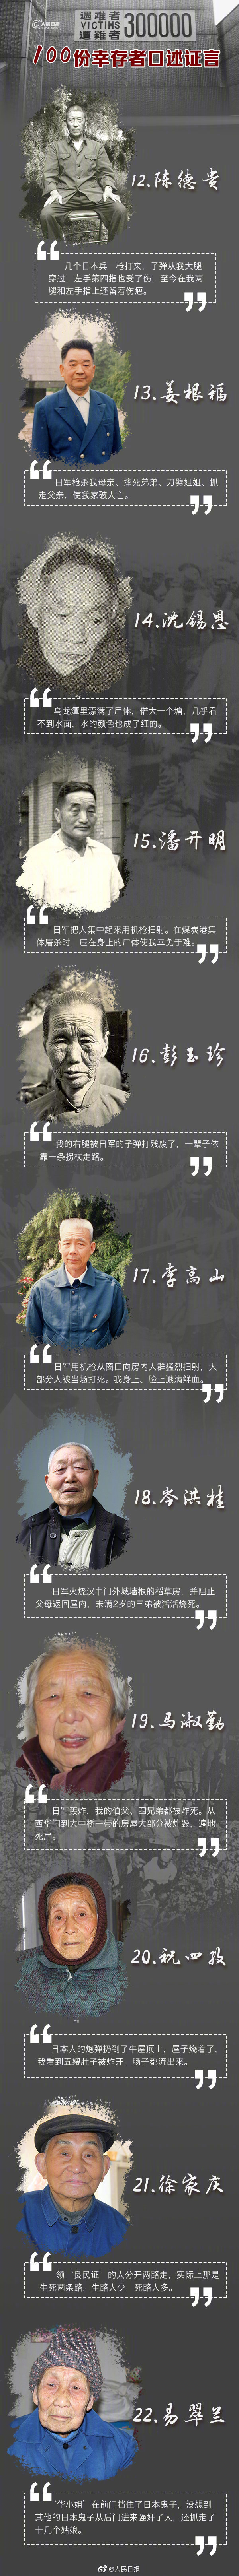 100份南京大屠杀幸存者证言